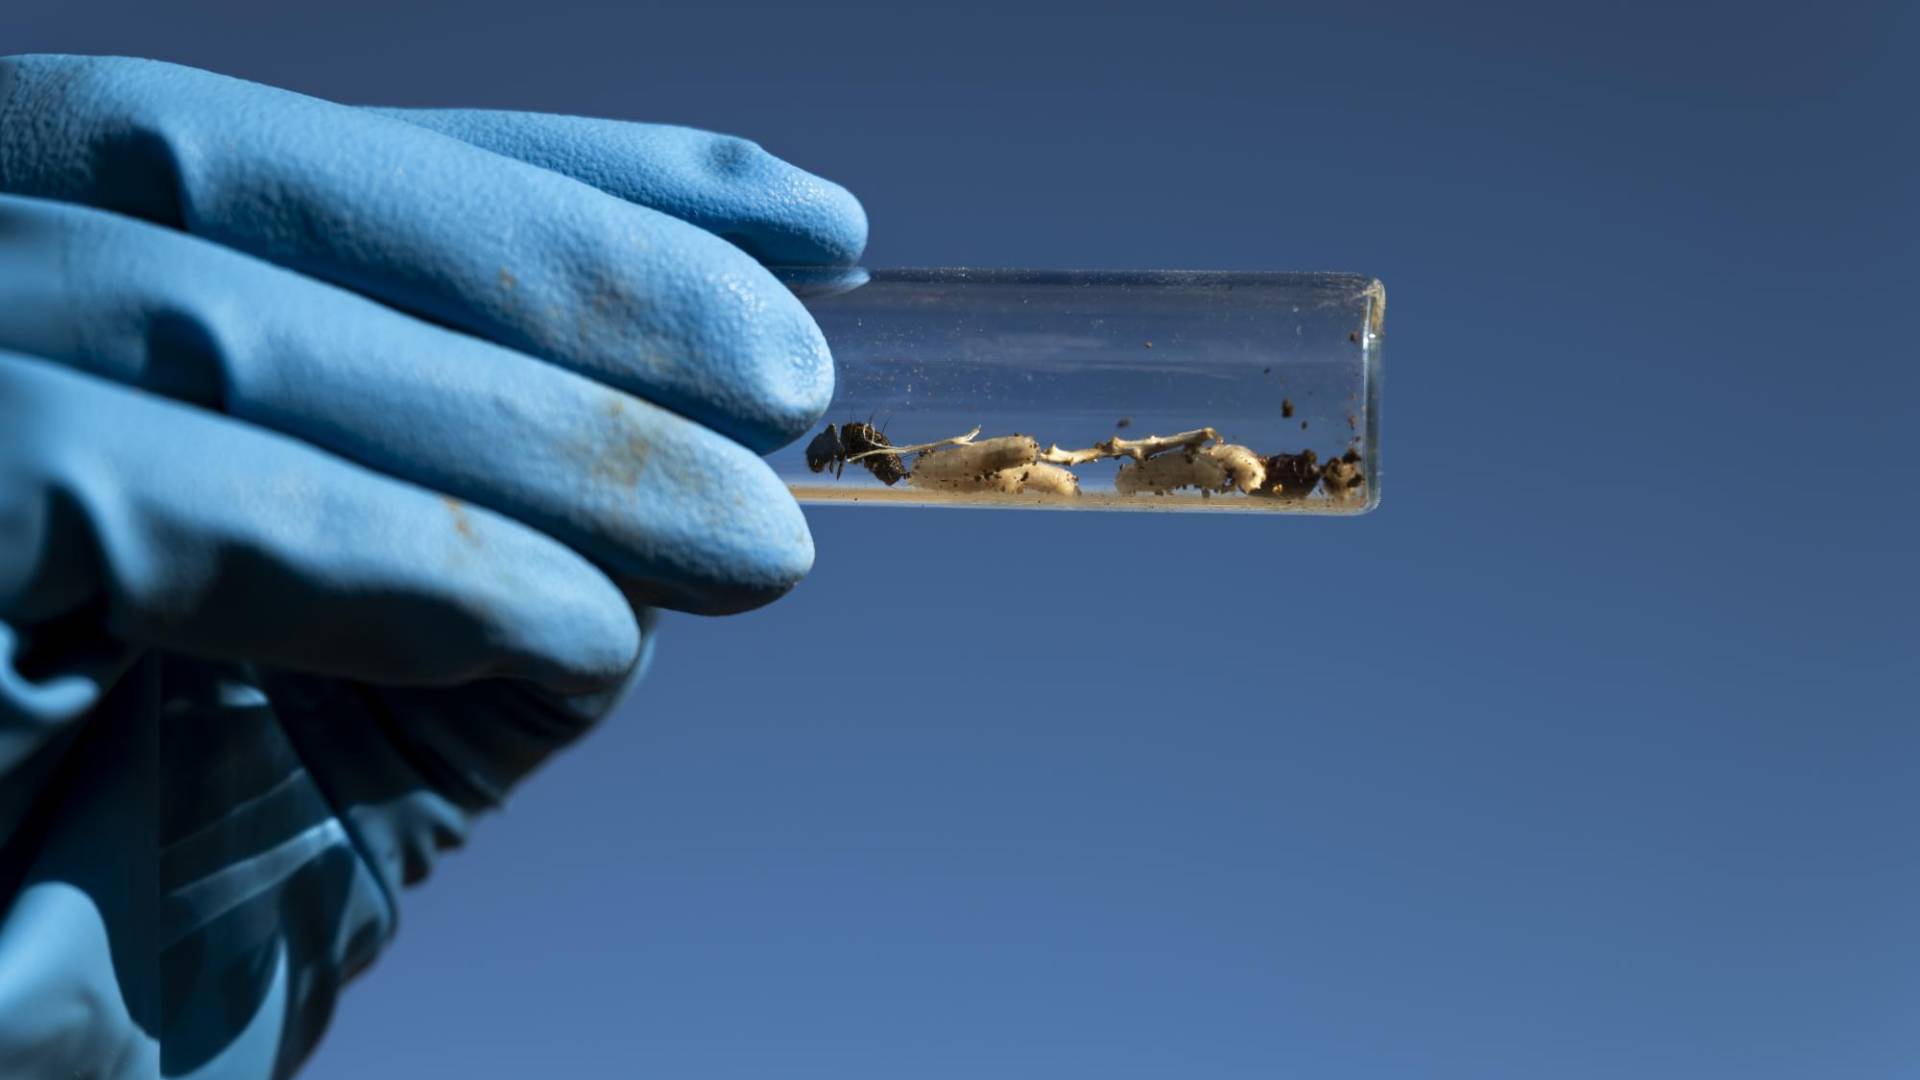 $!Las larvas y pupas de los gusanos pueden analizarse en busca de drogas, dijo Alex Smith, director de un laboratorio forense.